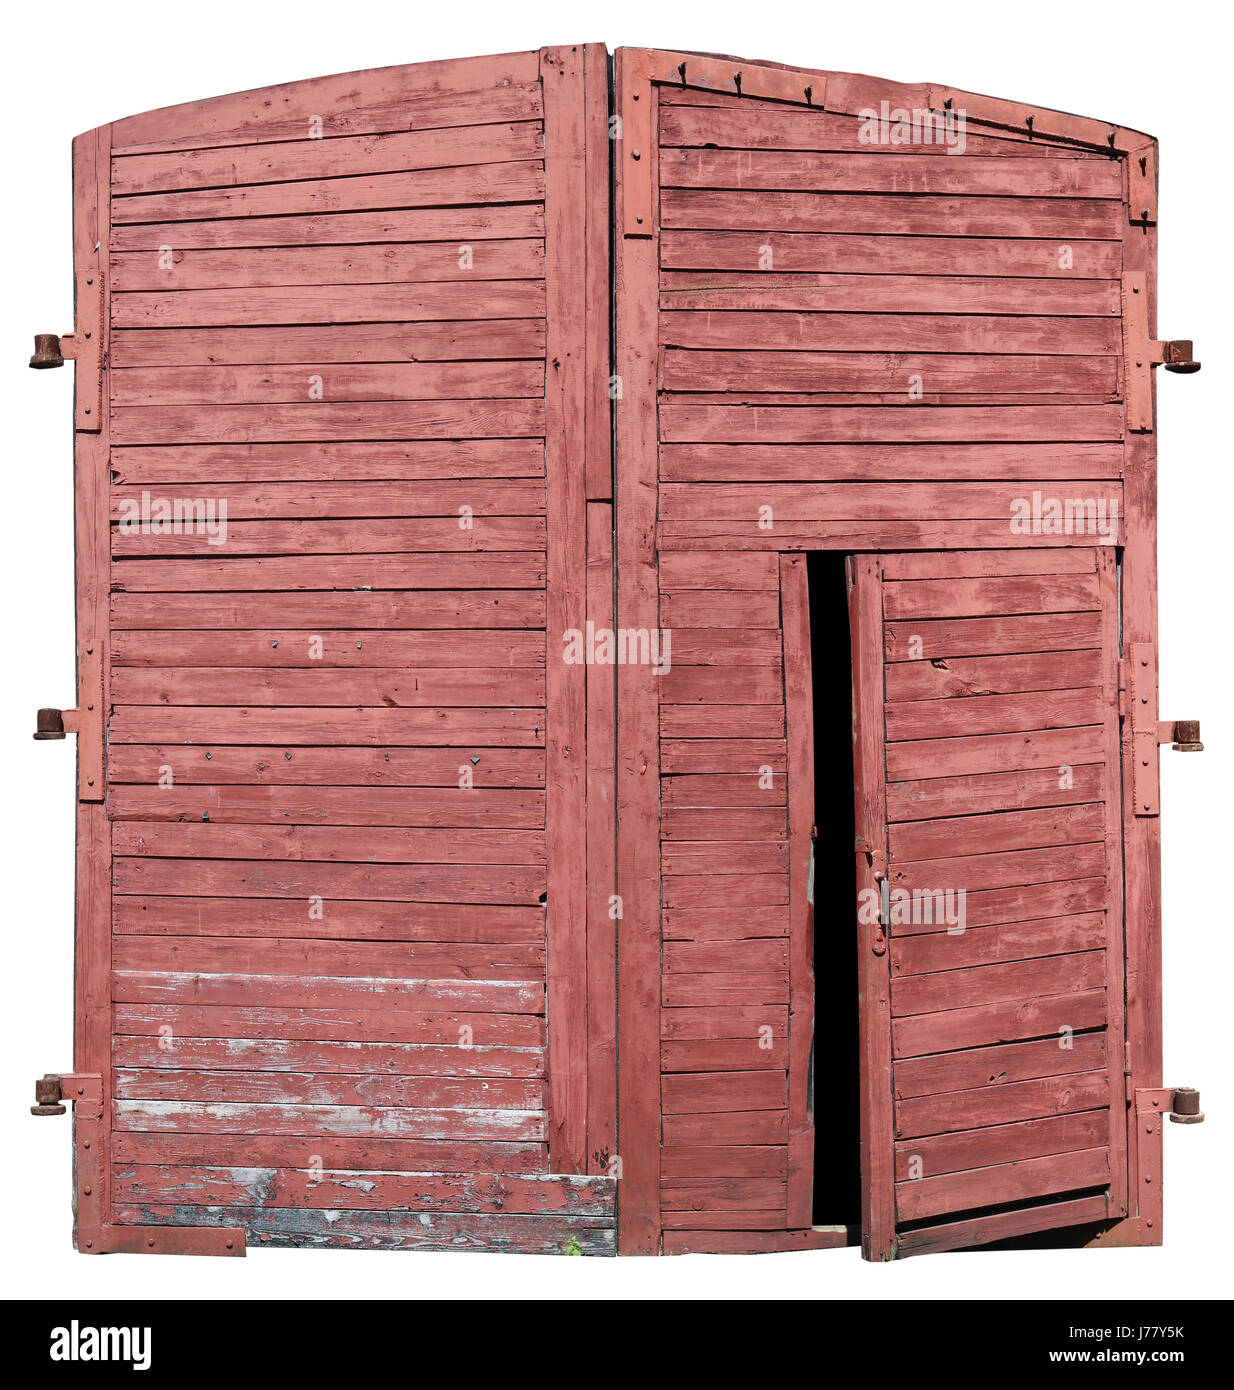 Les personnes âgées isolées de la porte rouge en bois ancienne rétro fire brigade shed. La petite porte est partiellement ouverte Banque D'Images